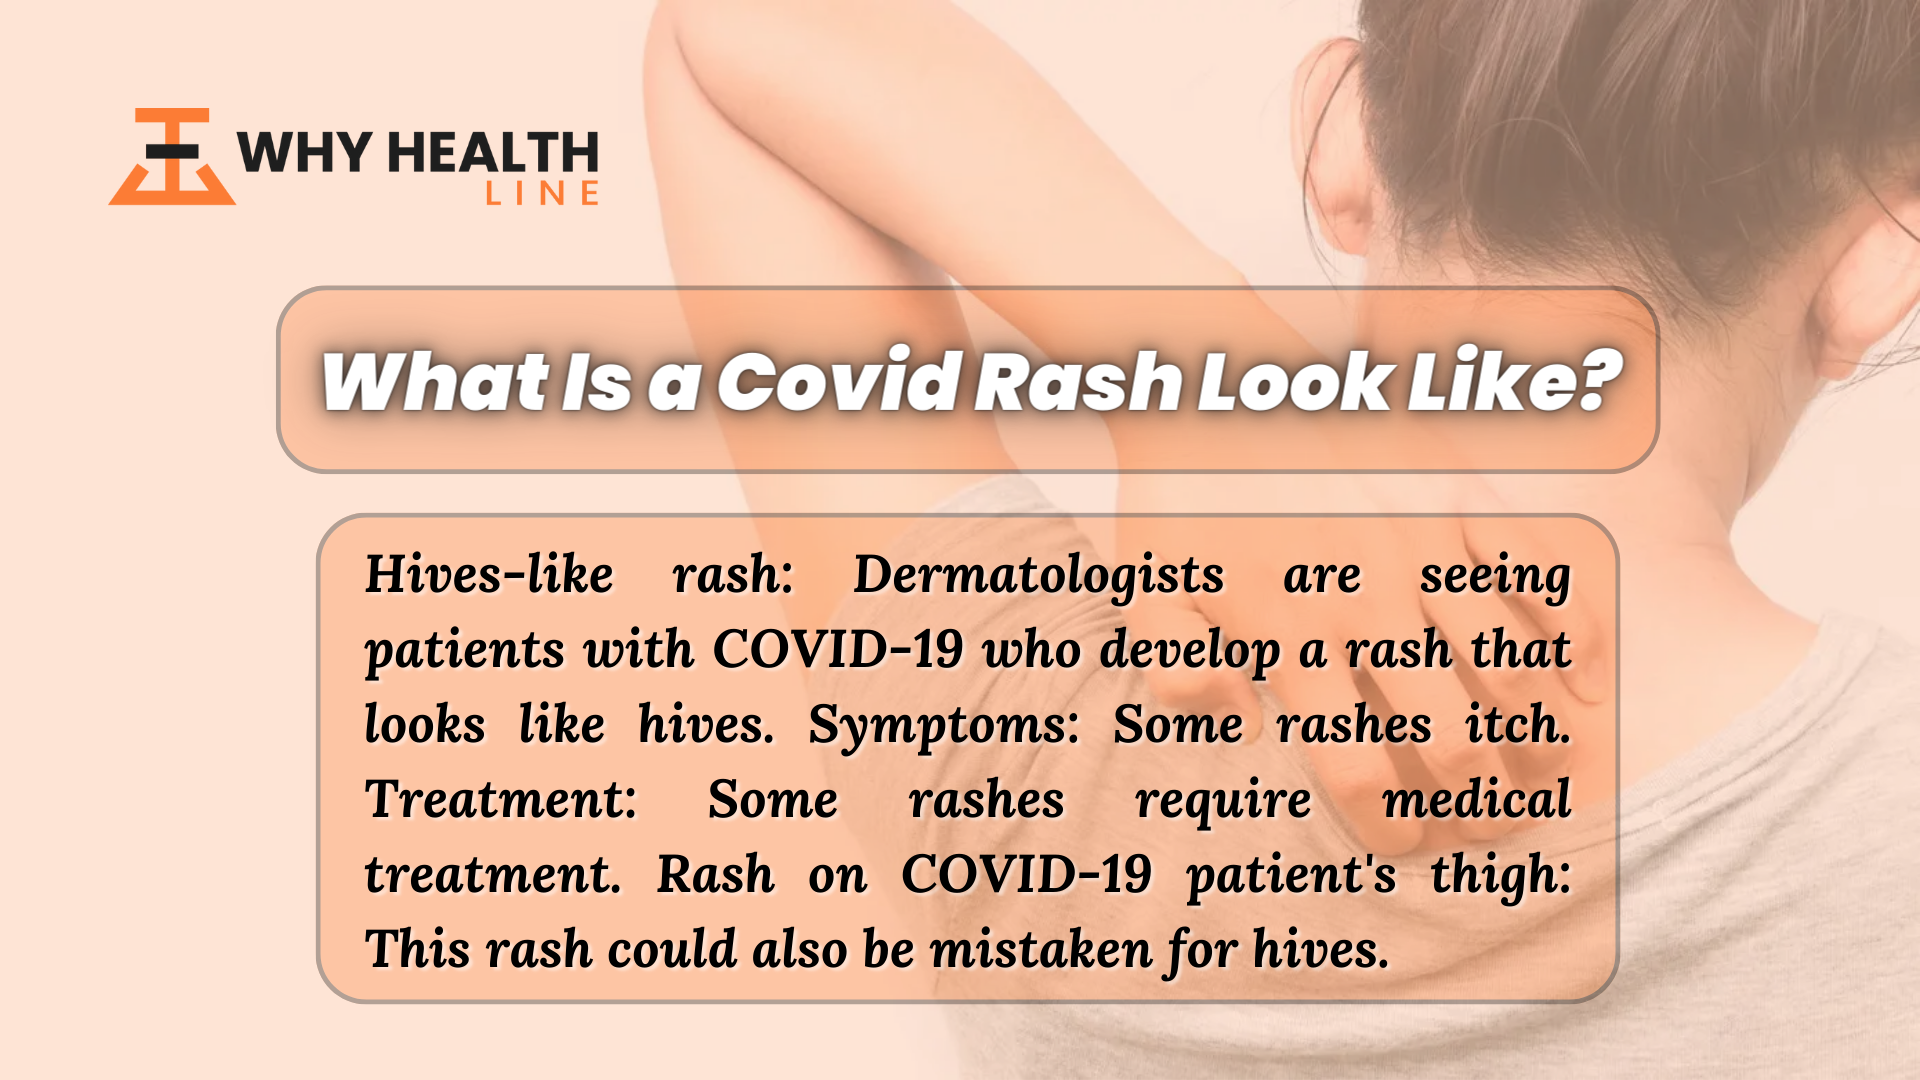 What Is a Covid Rash Look Like?